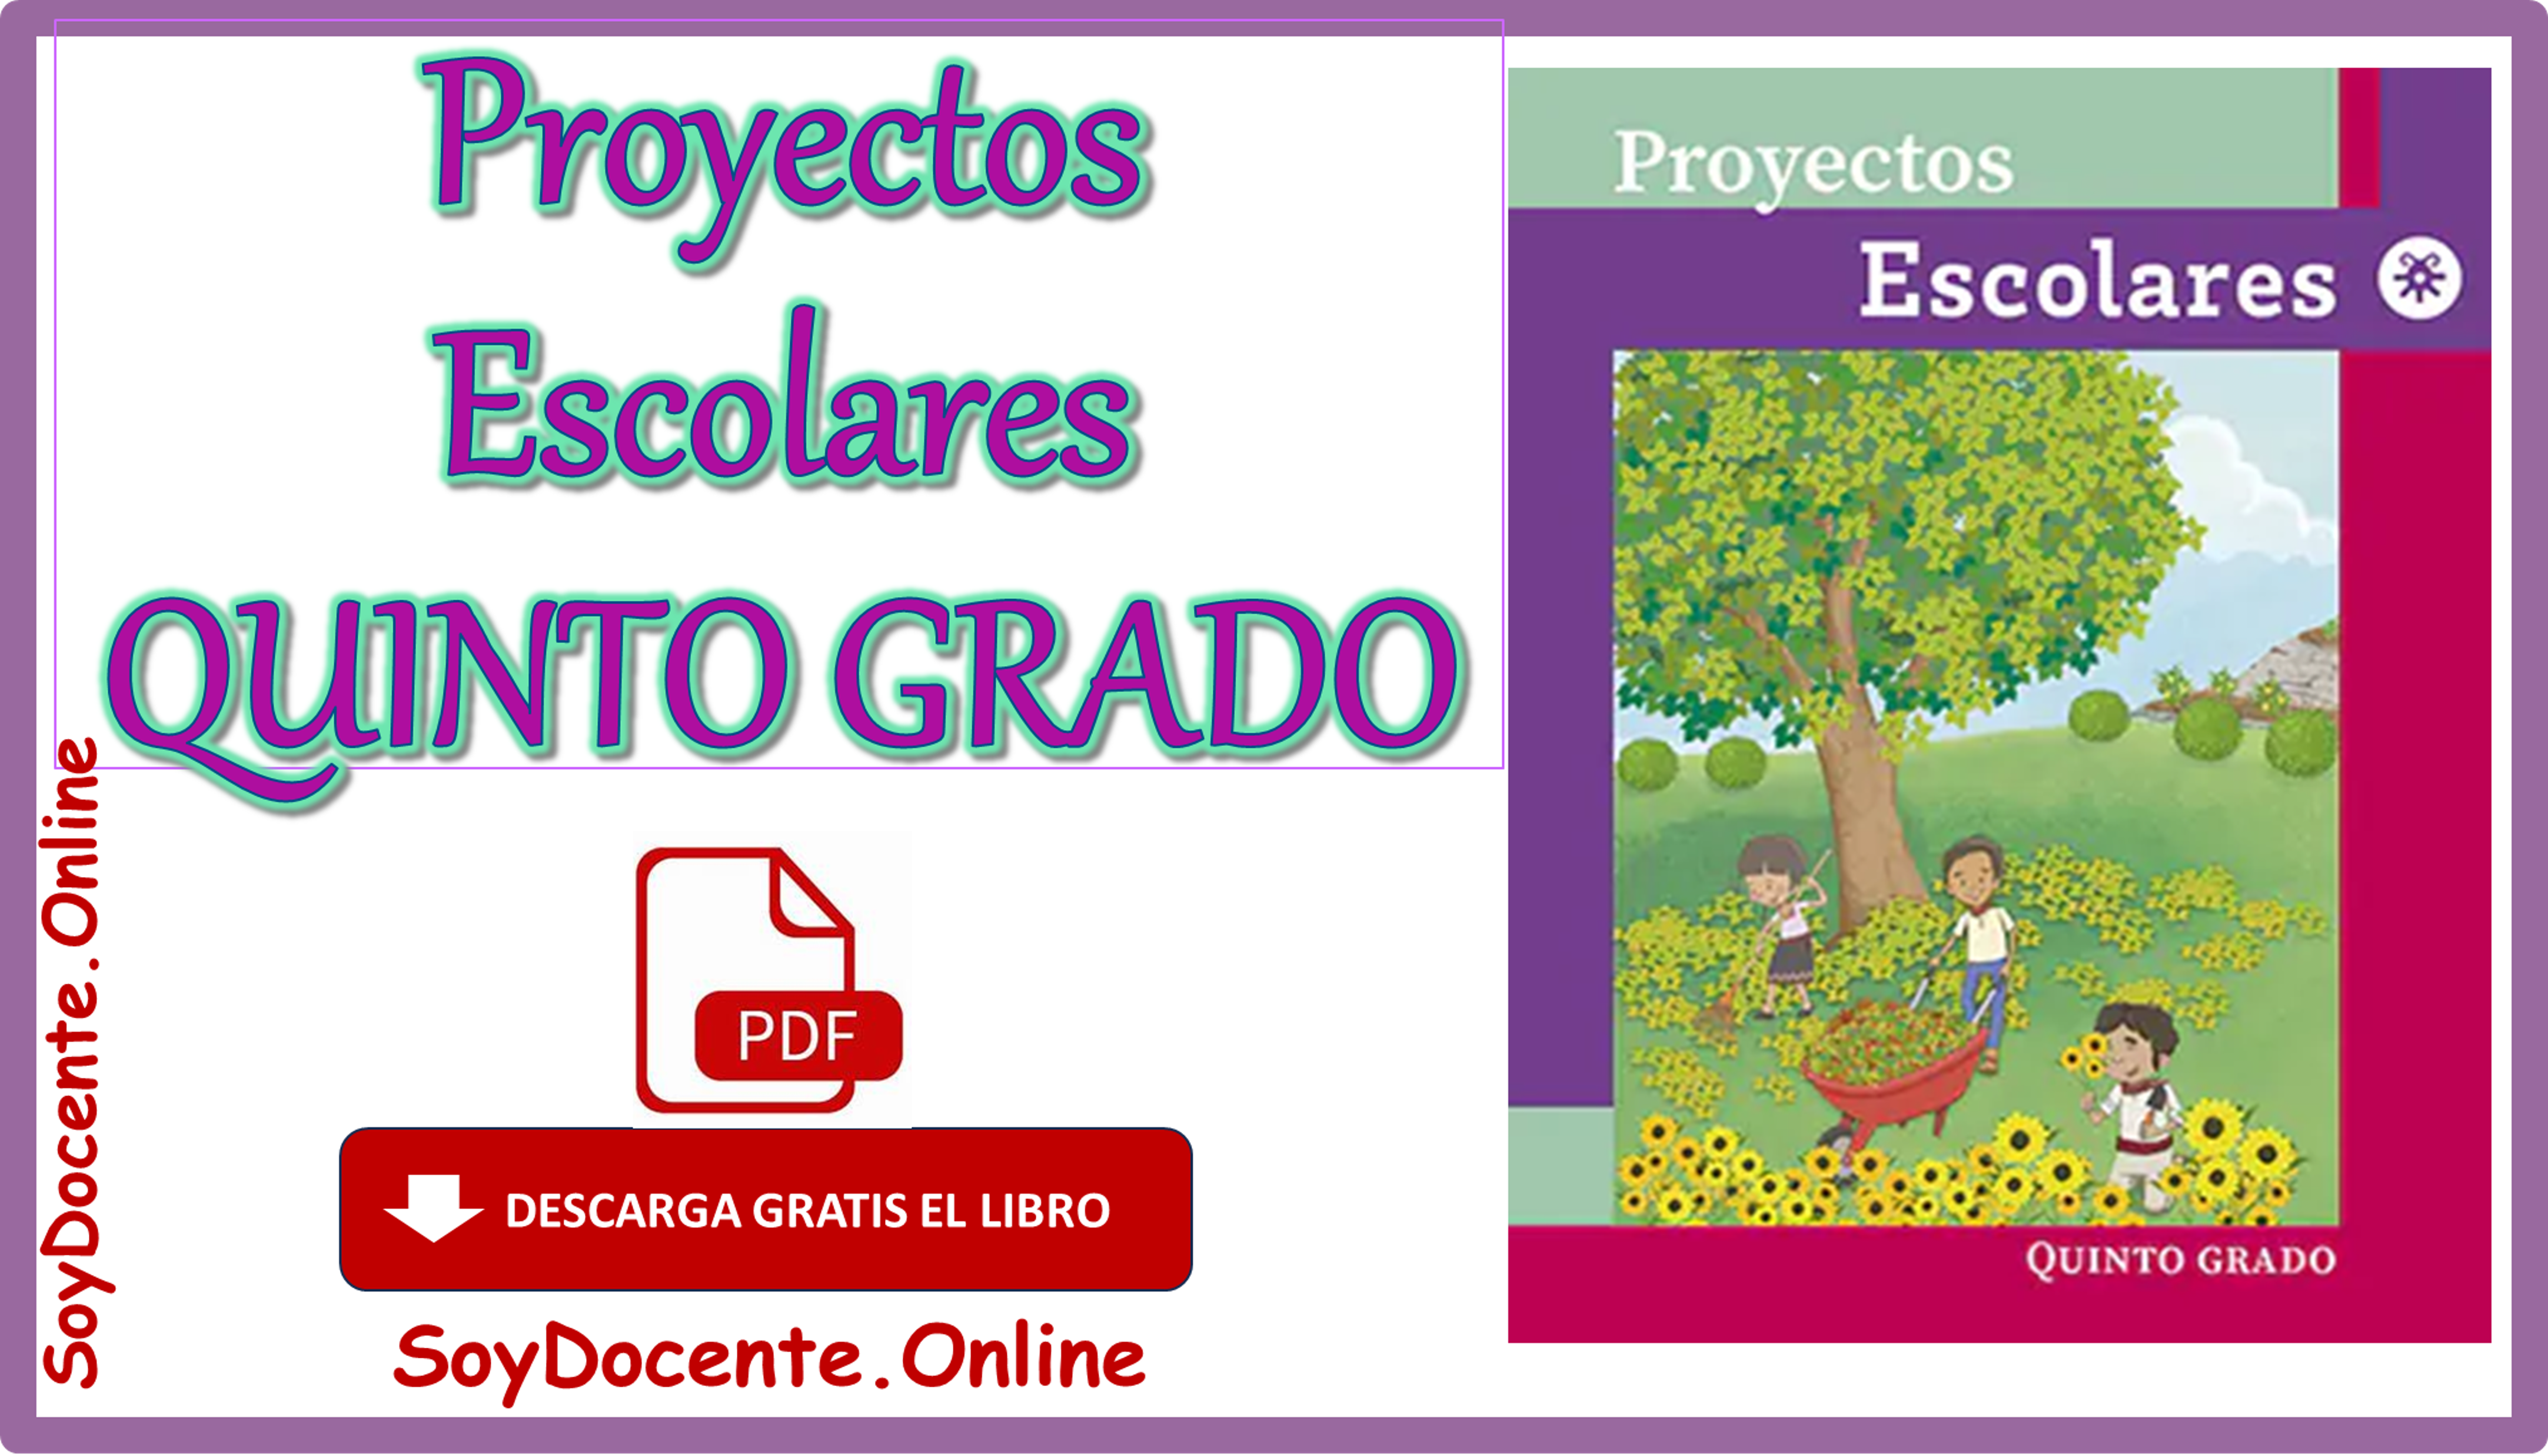 Descarga gratis el Libro de Proyectos escolares quinto grado de Primaria obra de la SEP distribuido por CONALITEG, en PDF.